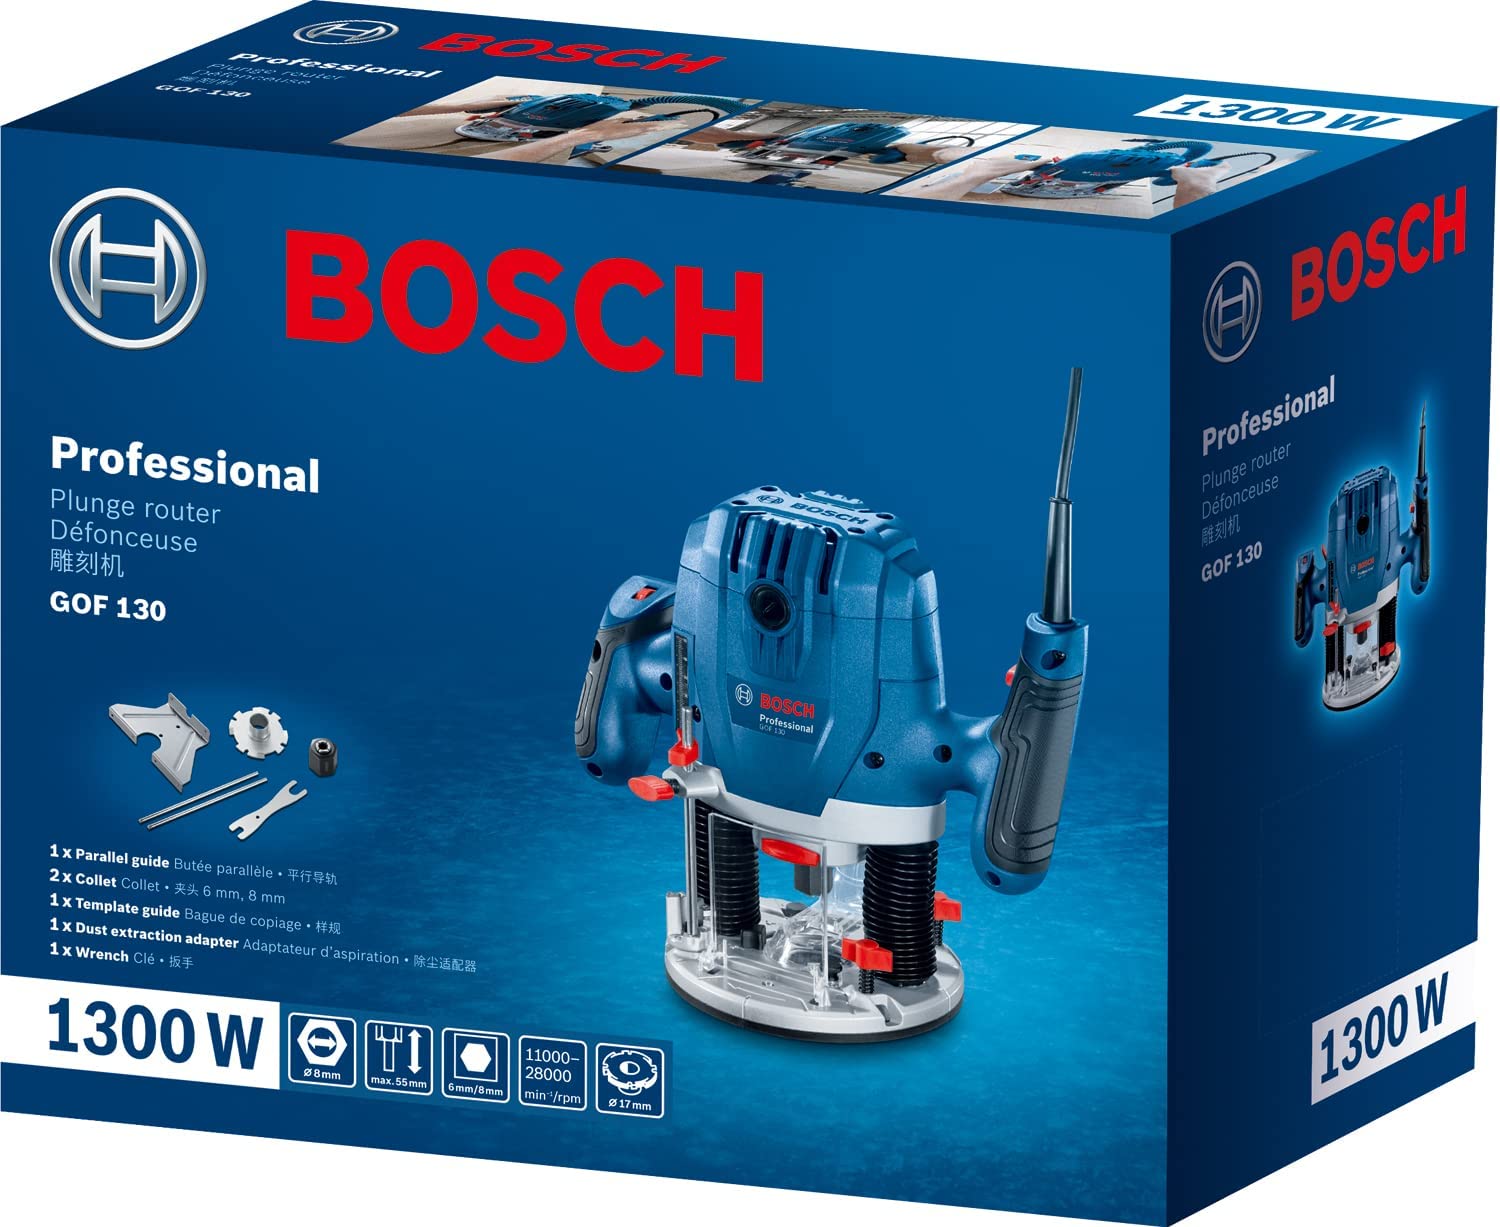 فرز نجاری بوش مدل Bosch GOF 130 1300W - ارسال ۱۰ الی ۱۵ روز کاری